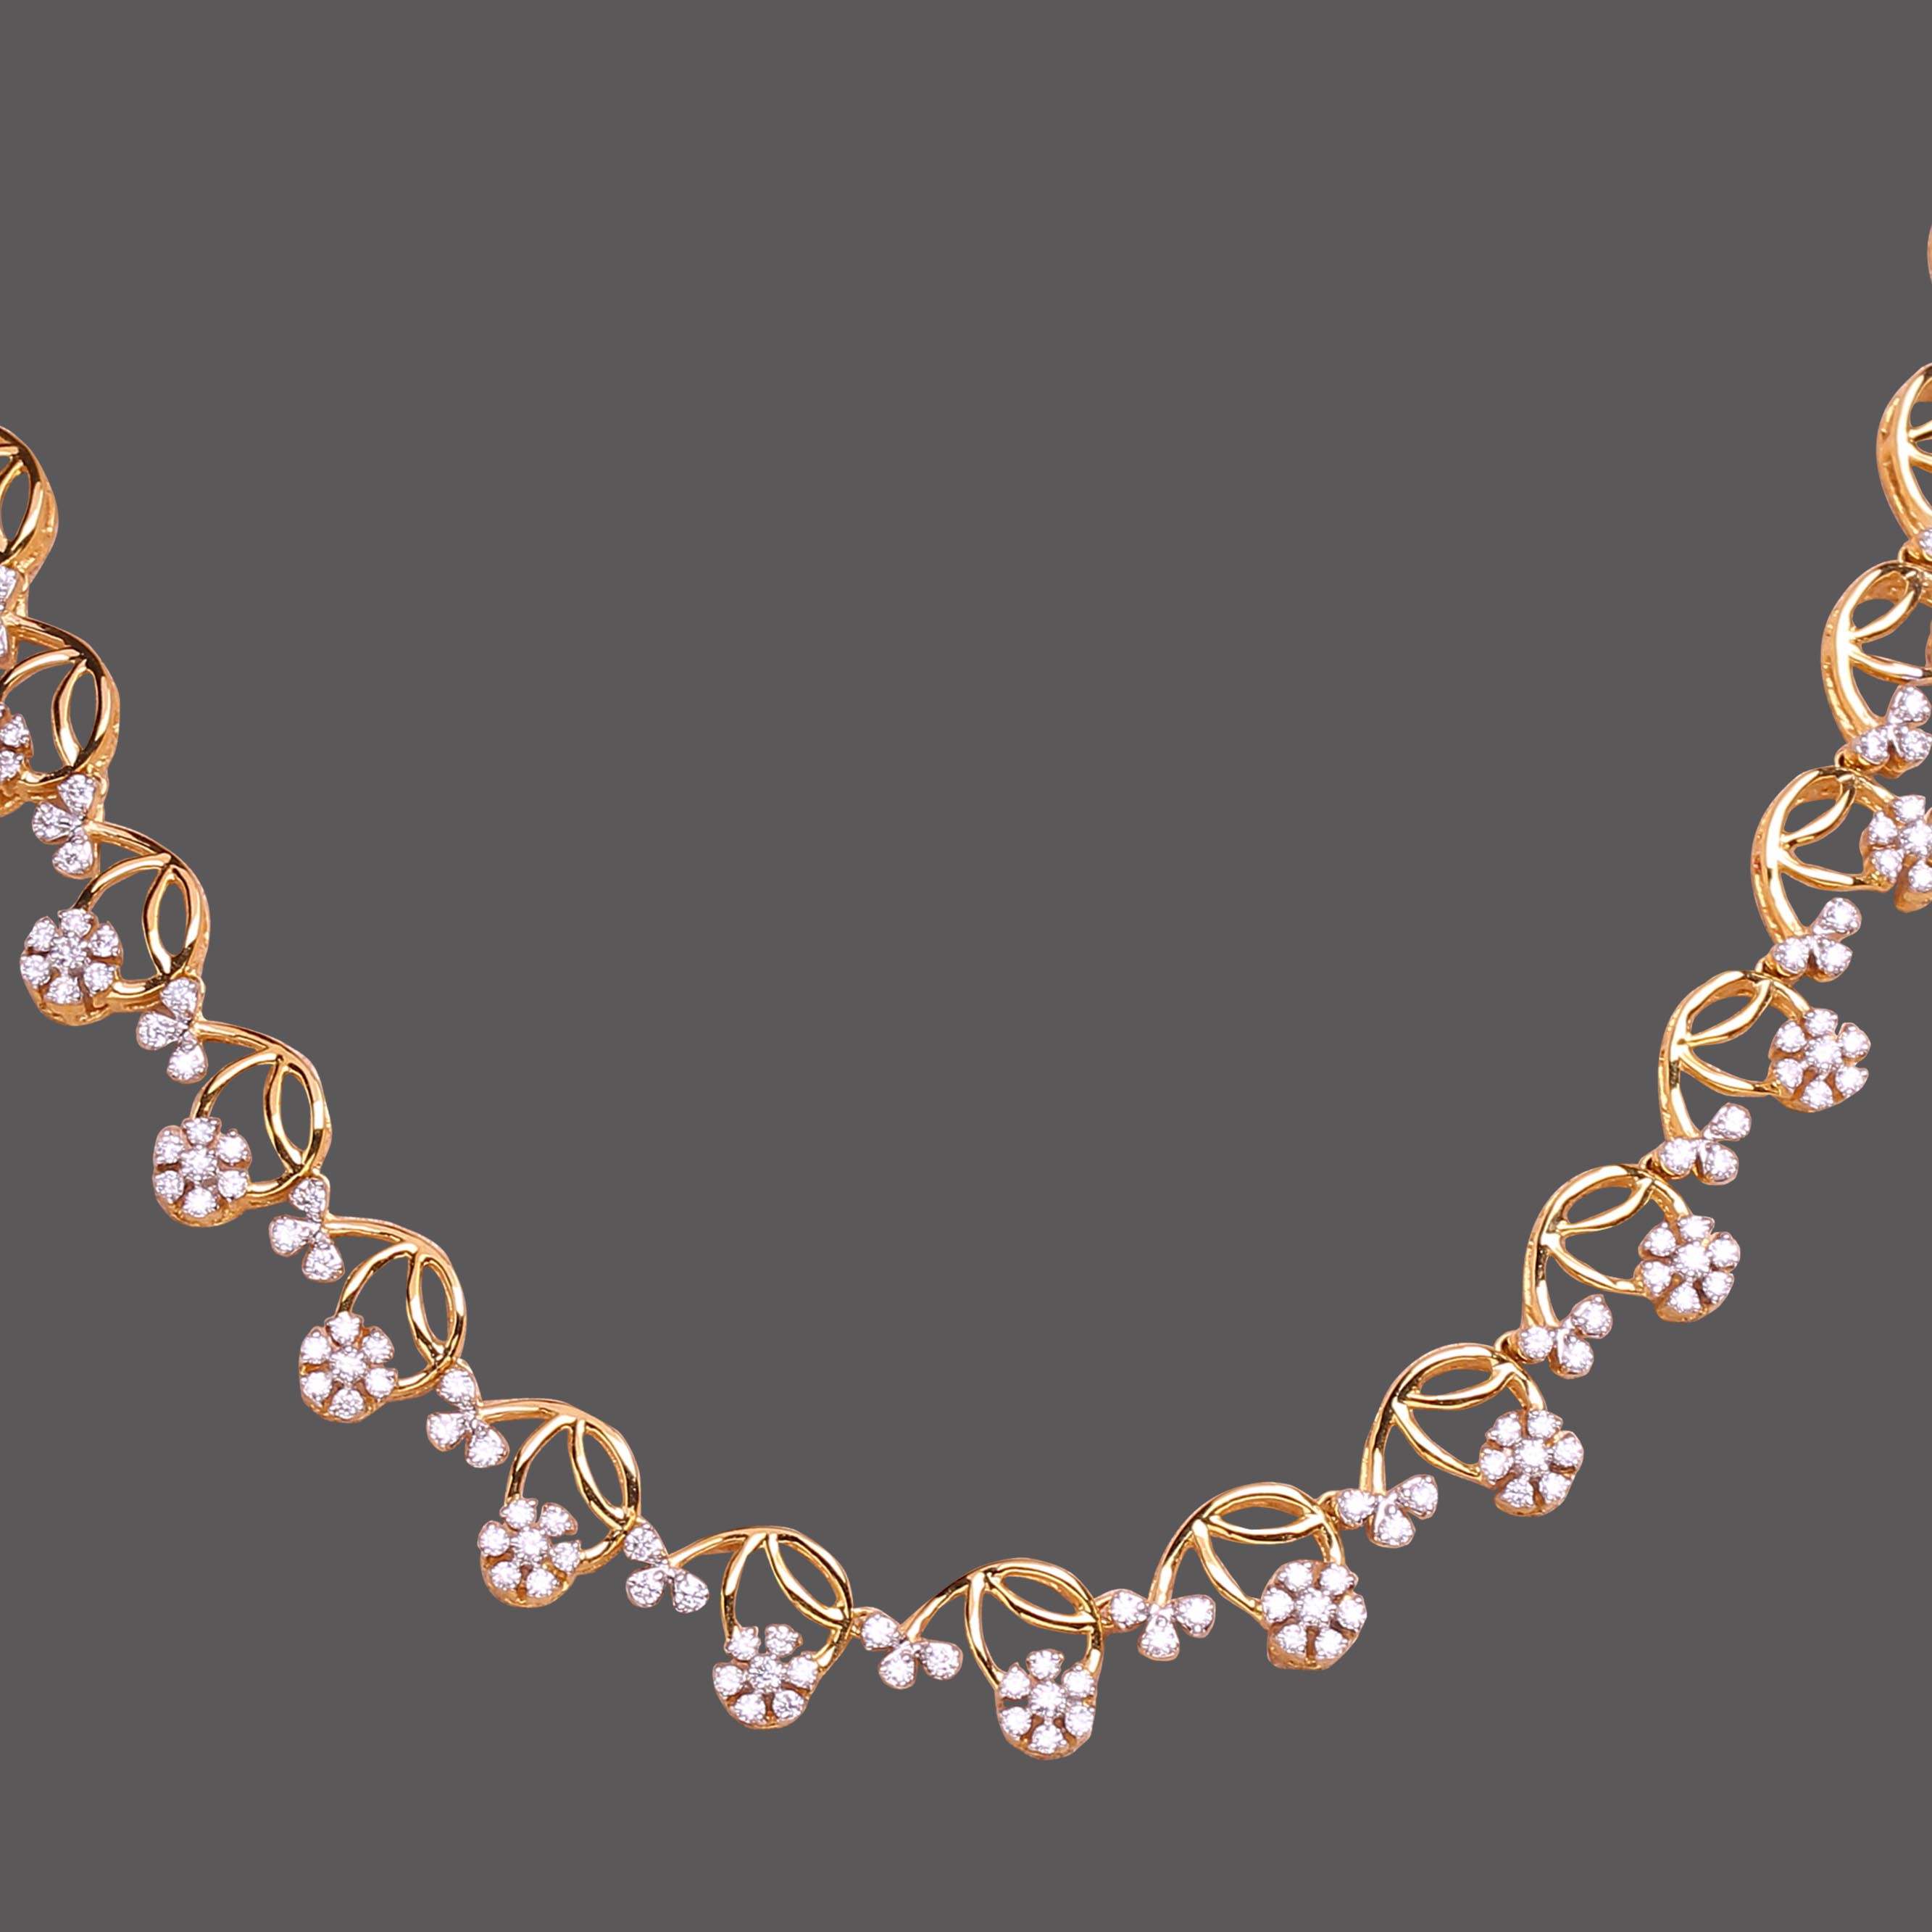 Charming Florets Diamond Necklace